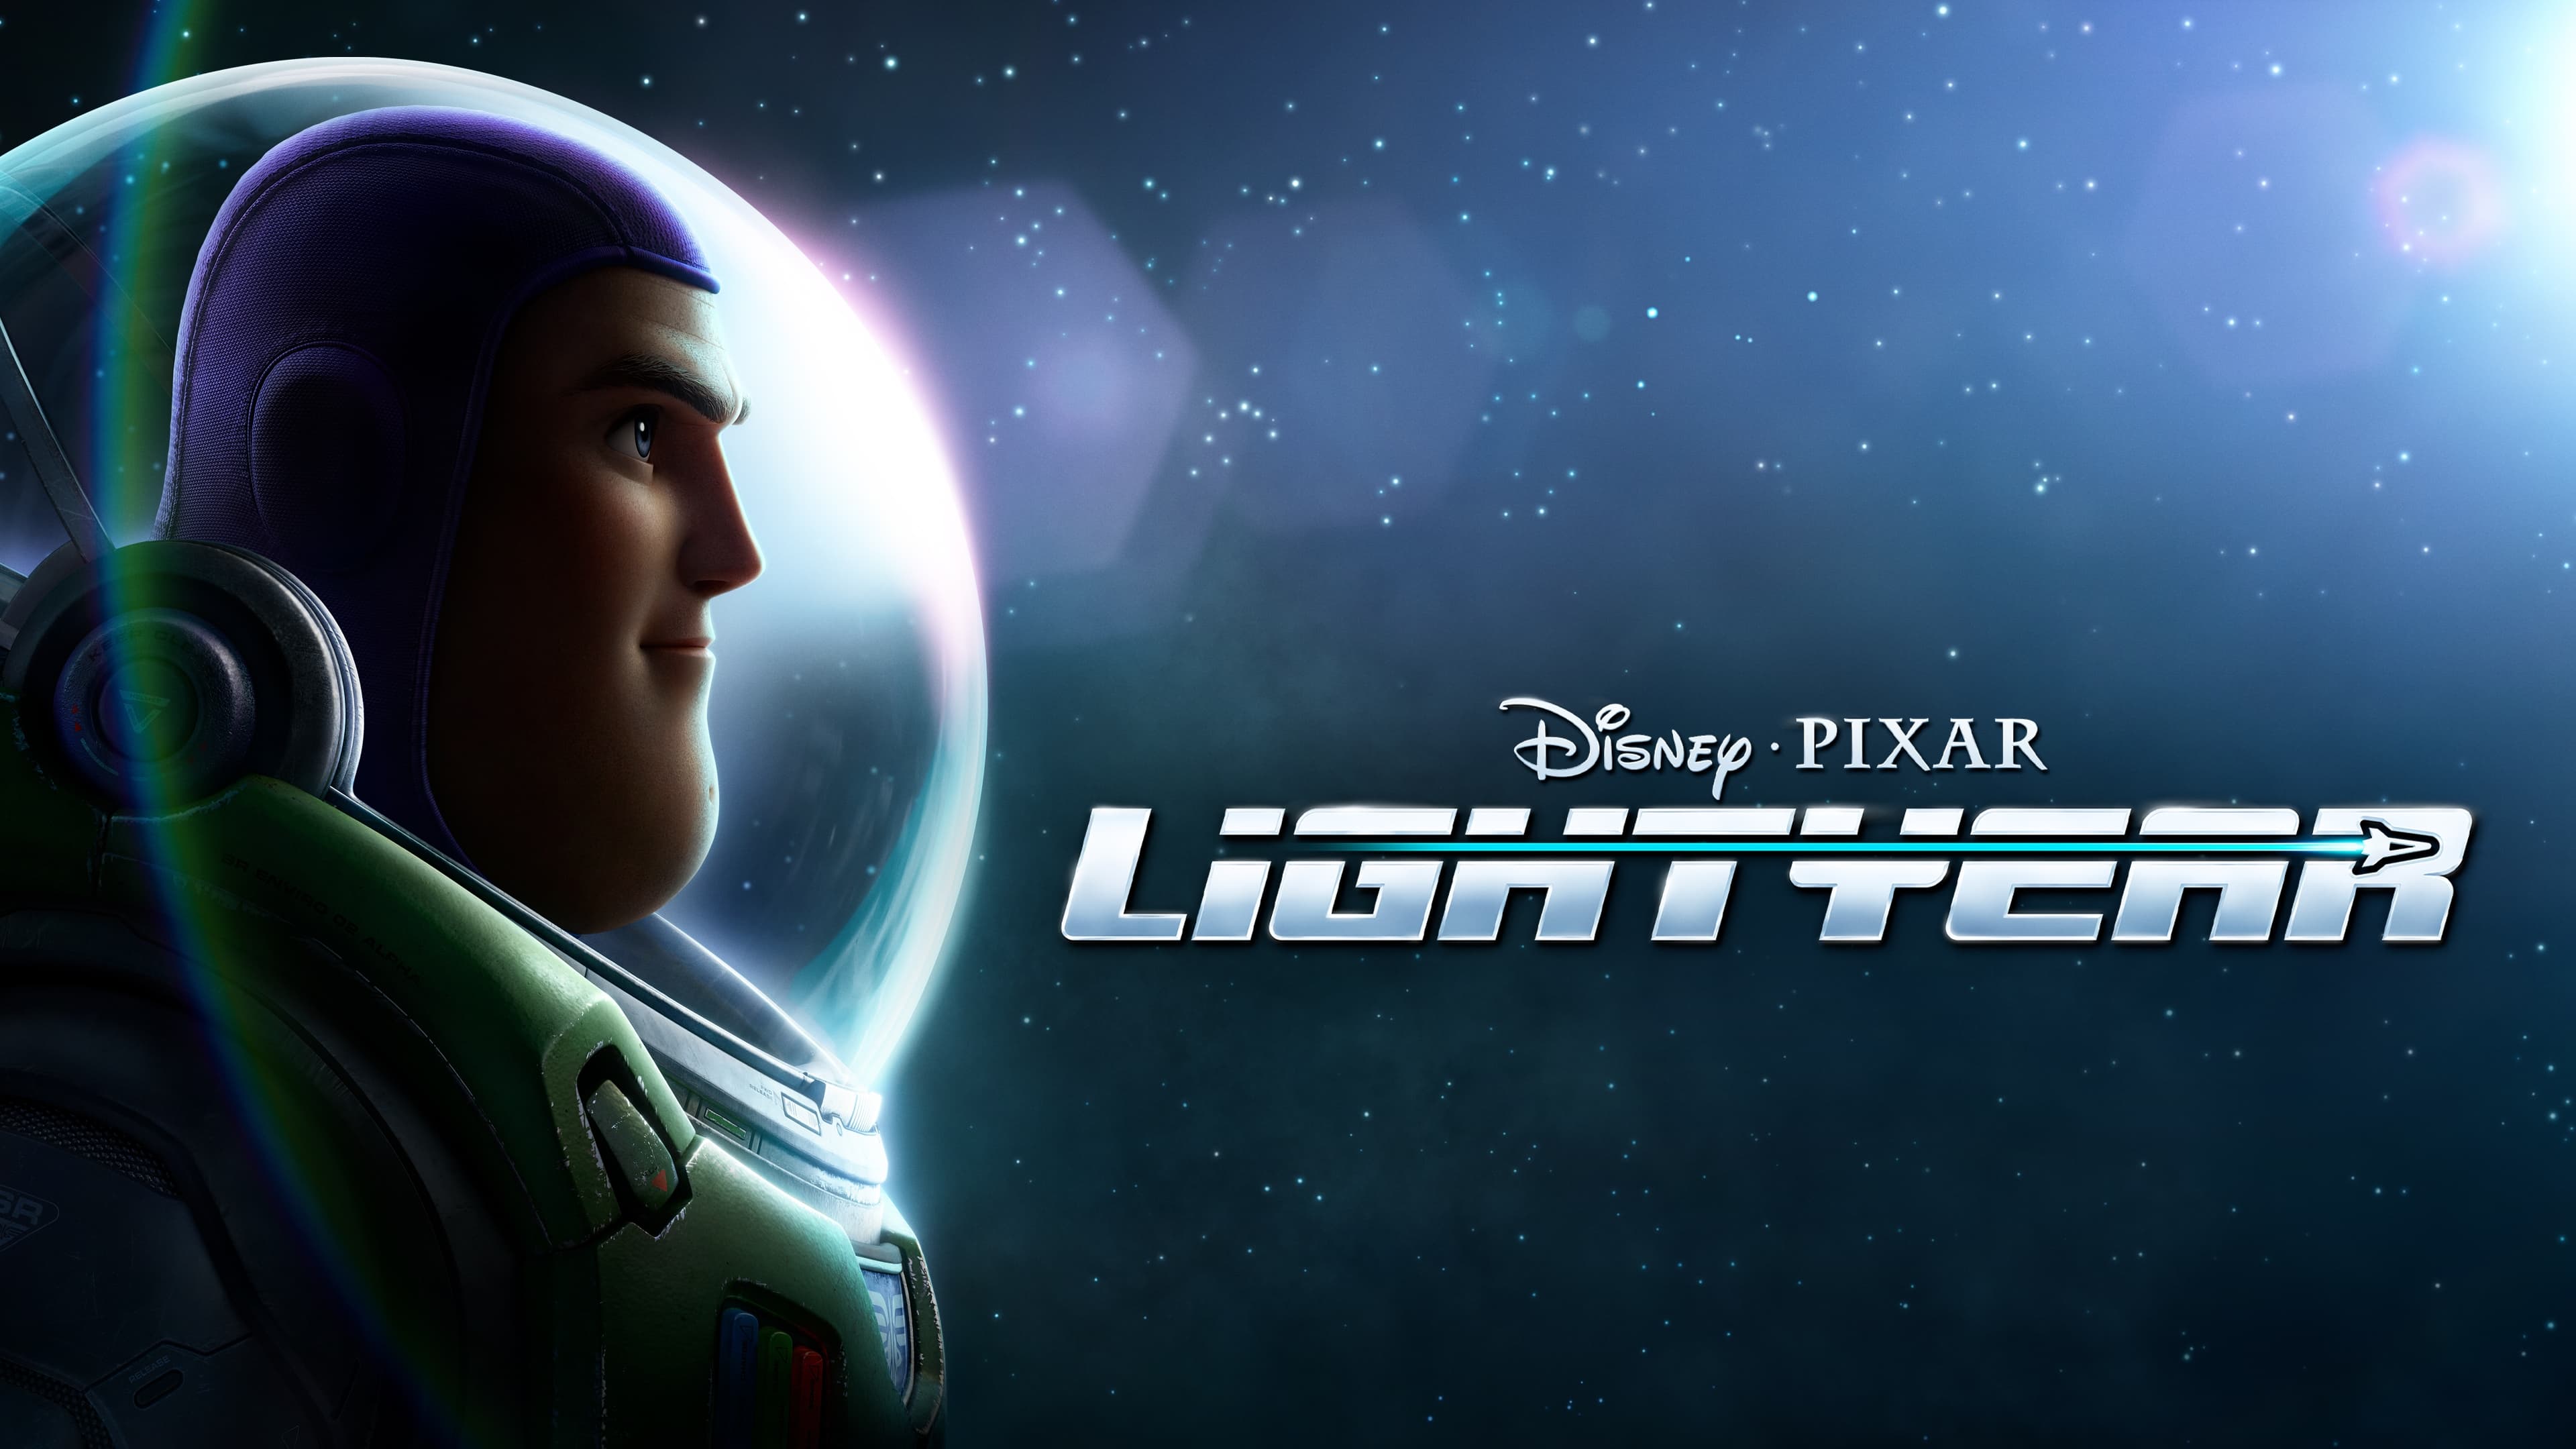 Lightyear - La vera storia di Buzz (2022)